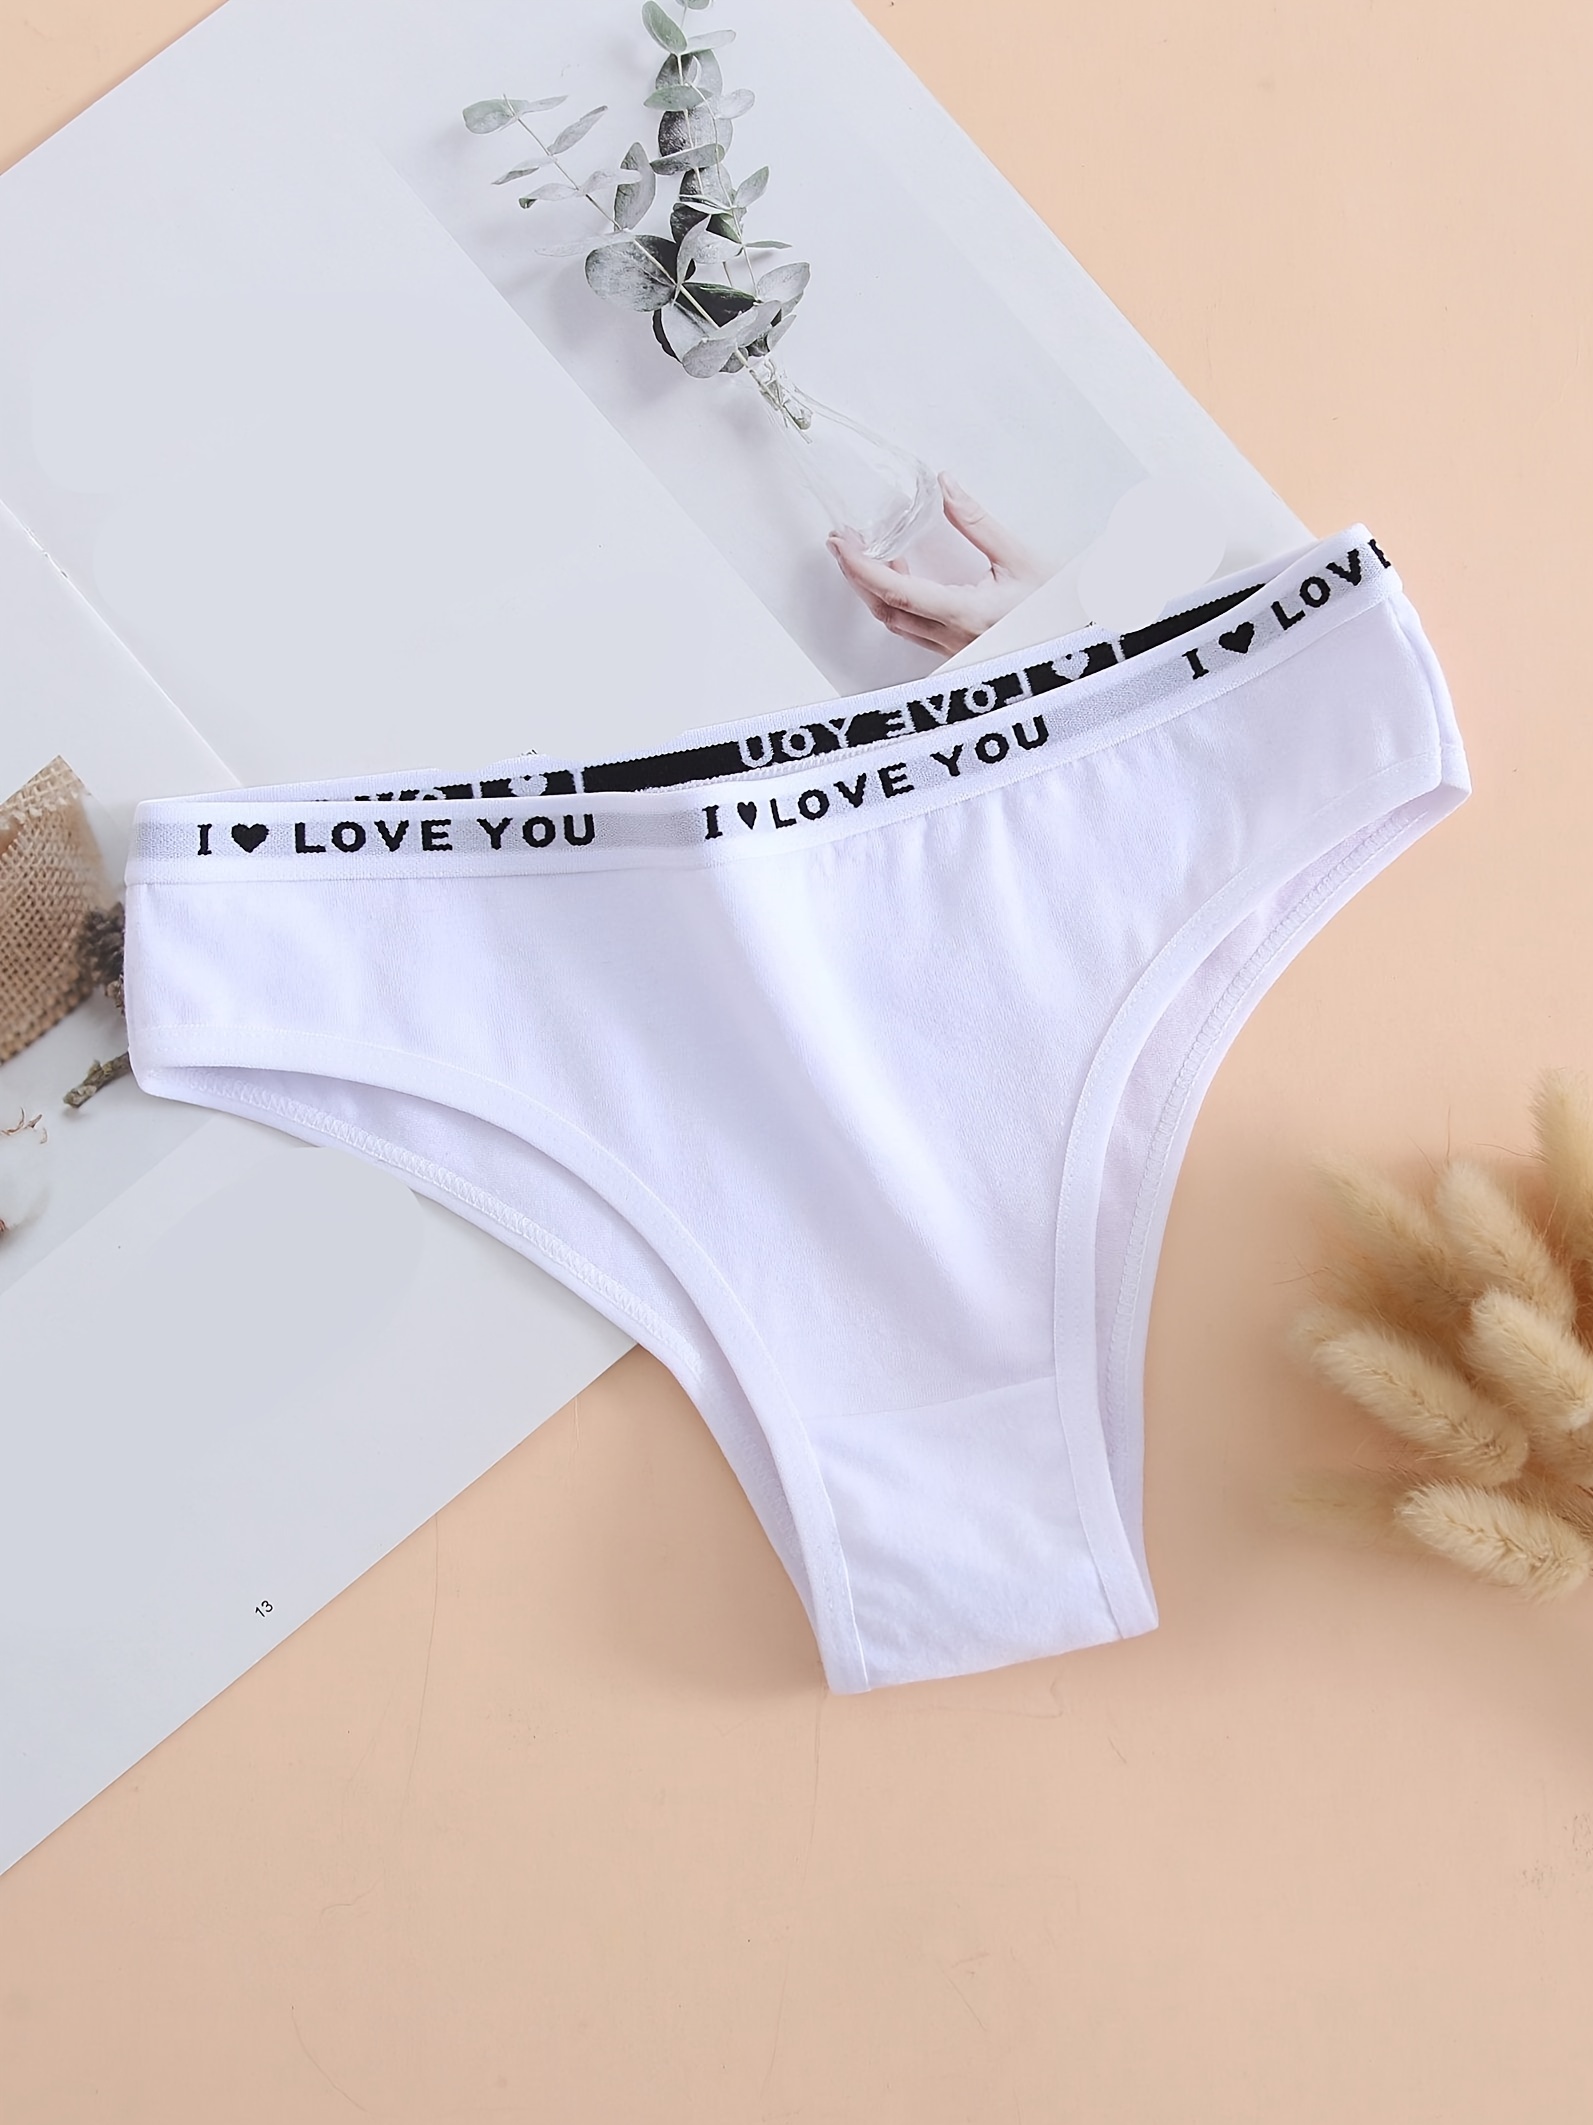 Lingerie Letters Cutout Thong - Women's Underwear Online